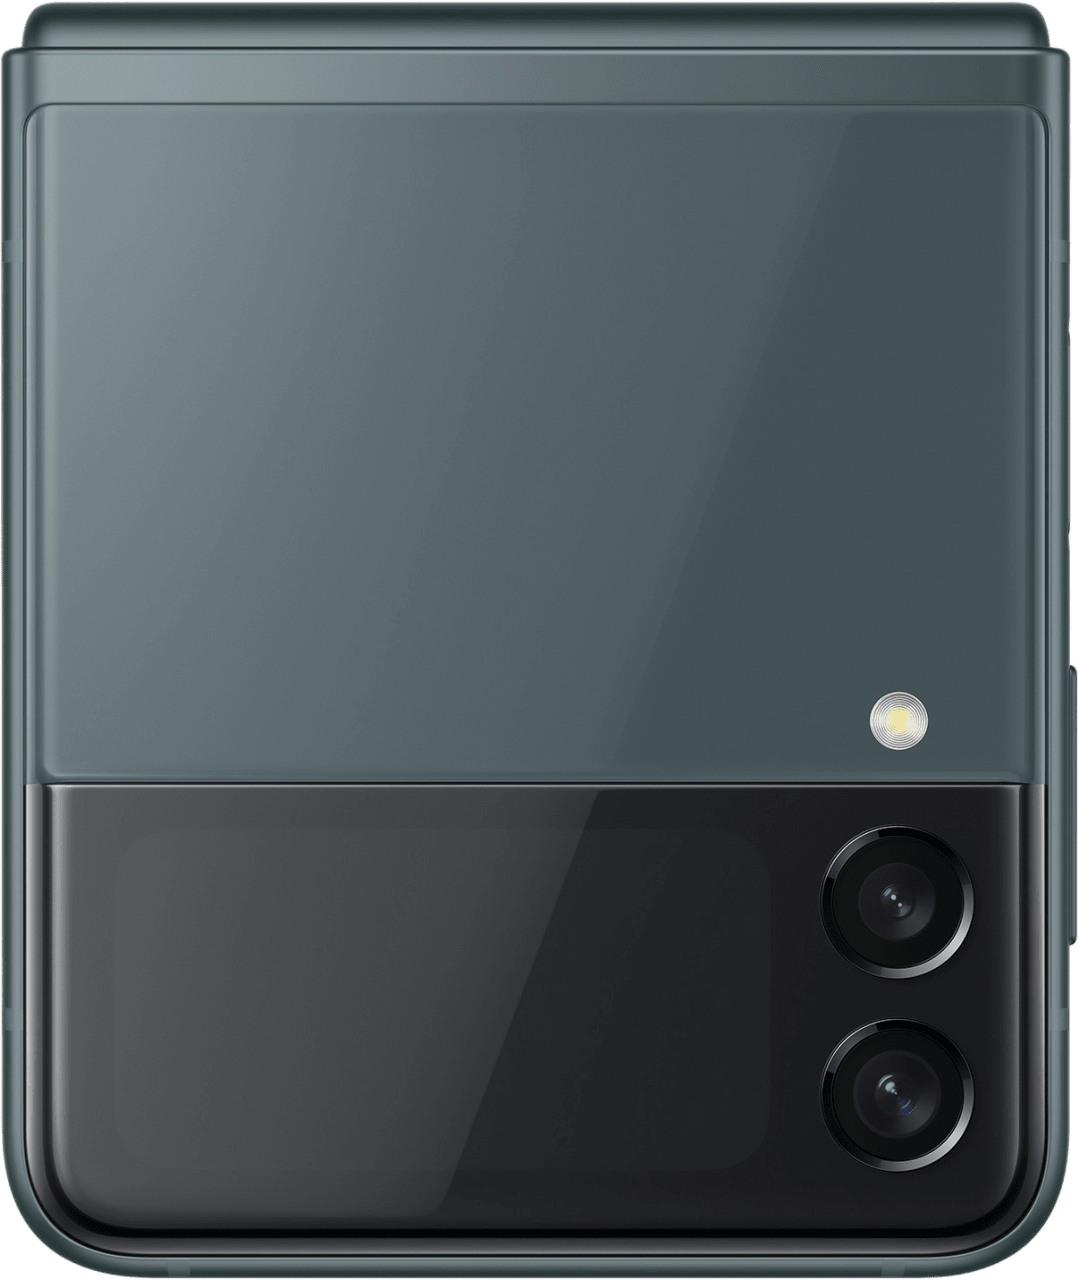 Grün Samsung Galaxy Z Flip 3 Smartphone - 128GB - Dual Sim.2